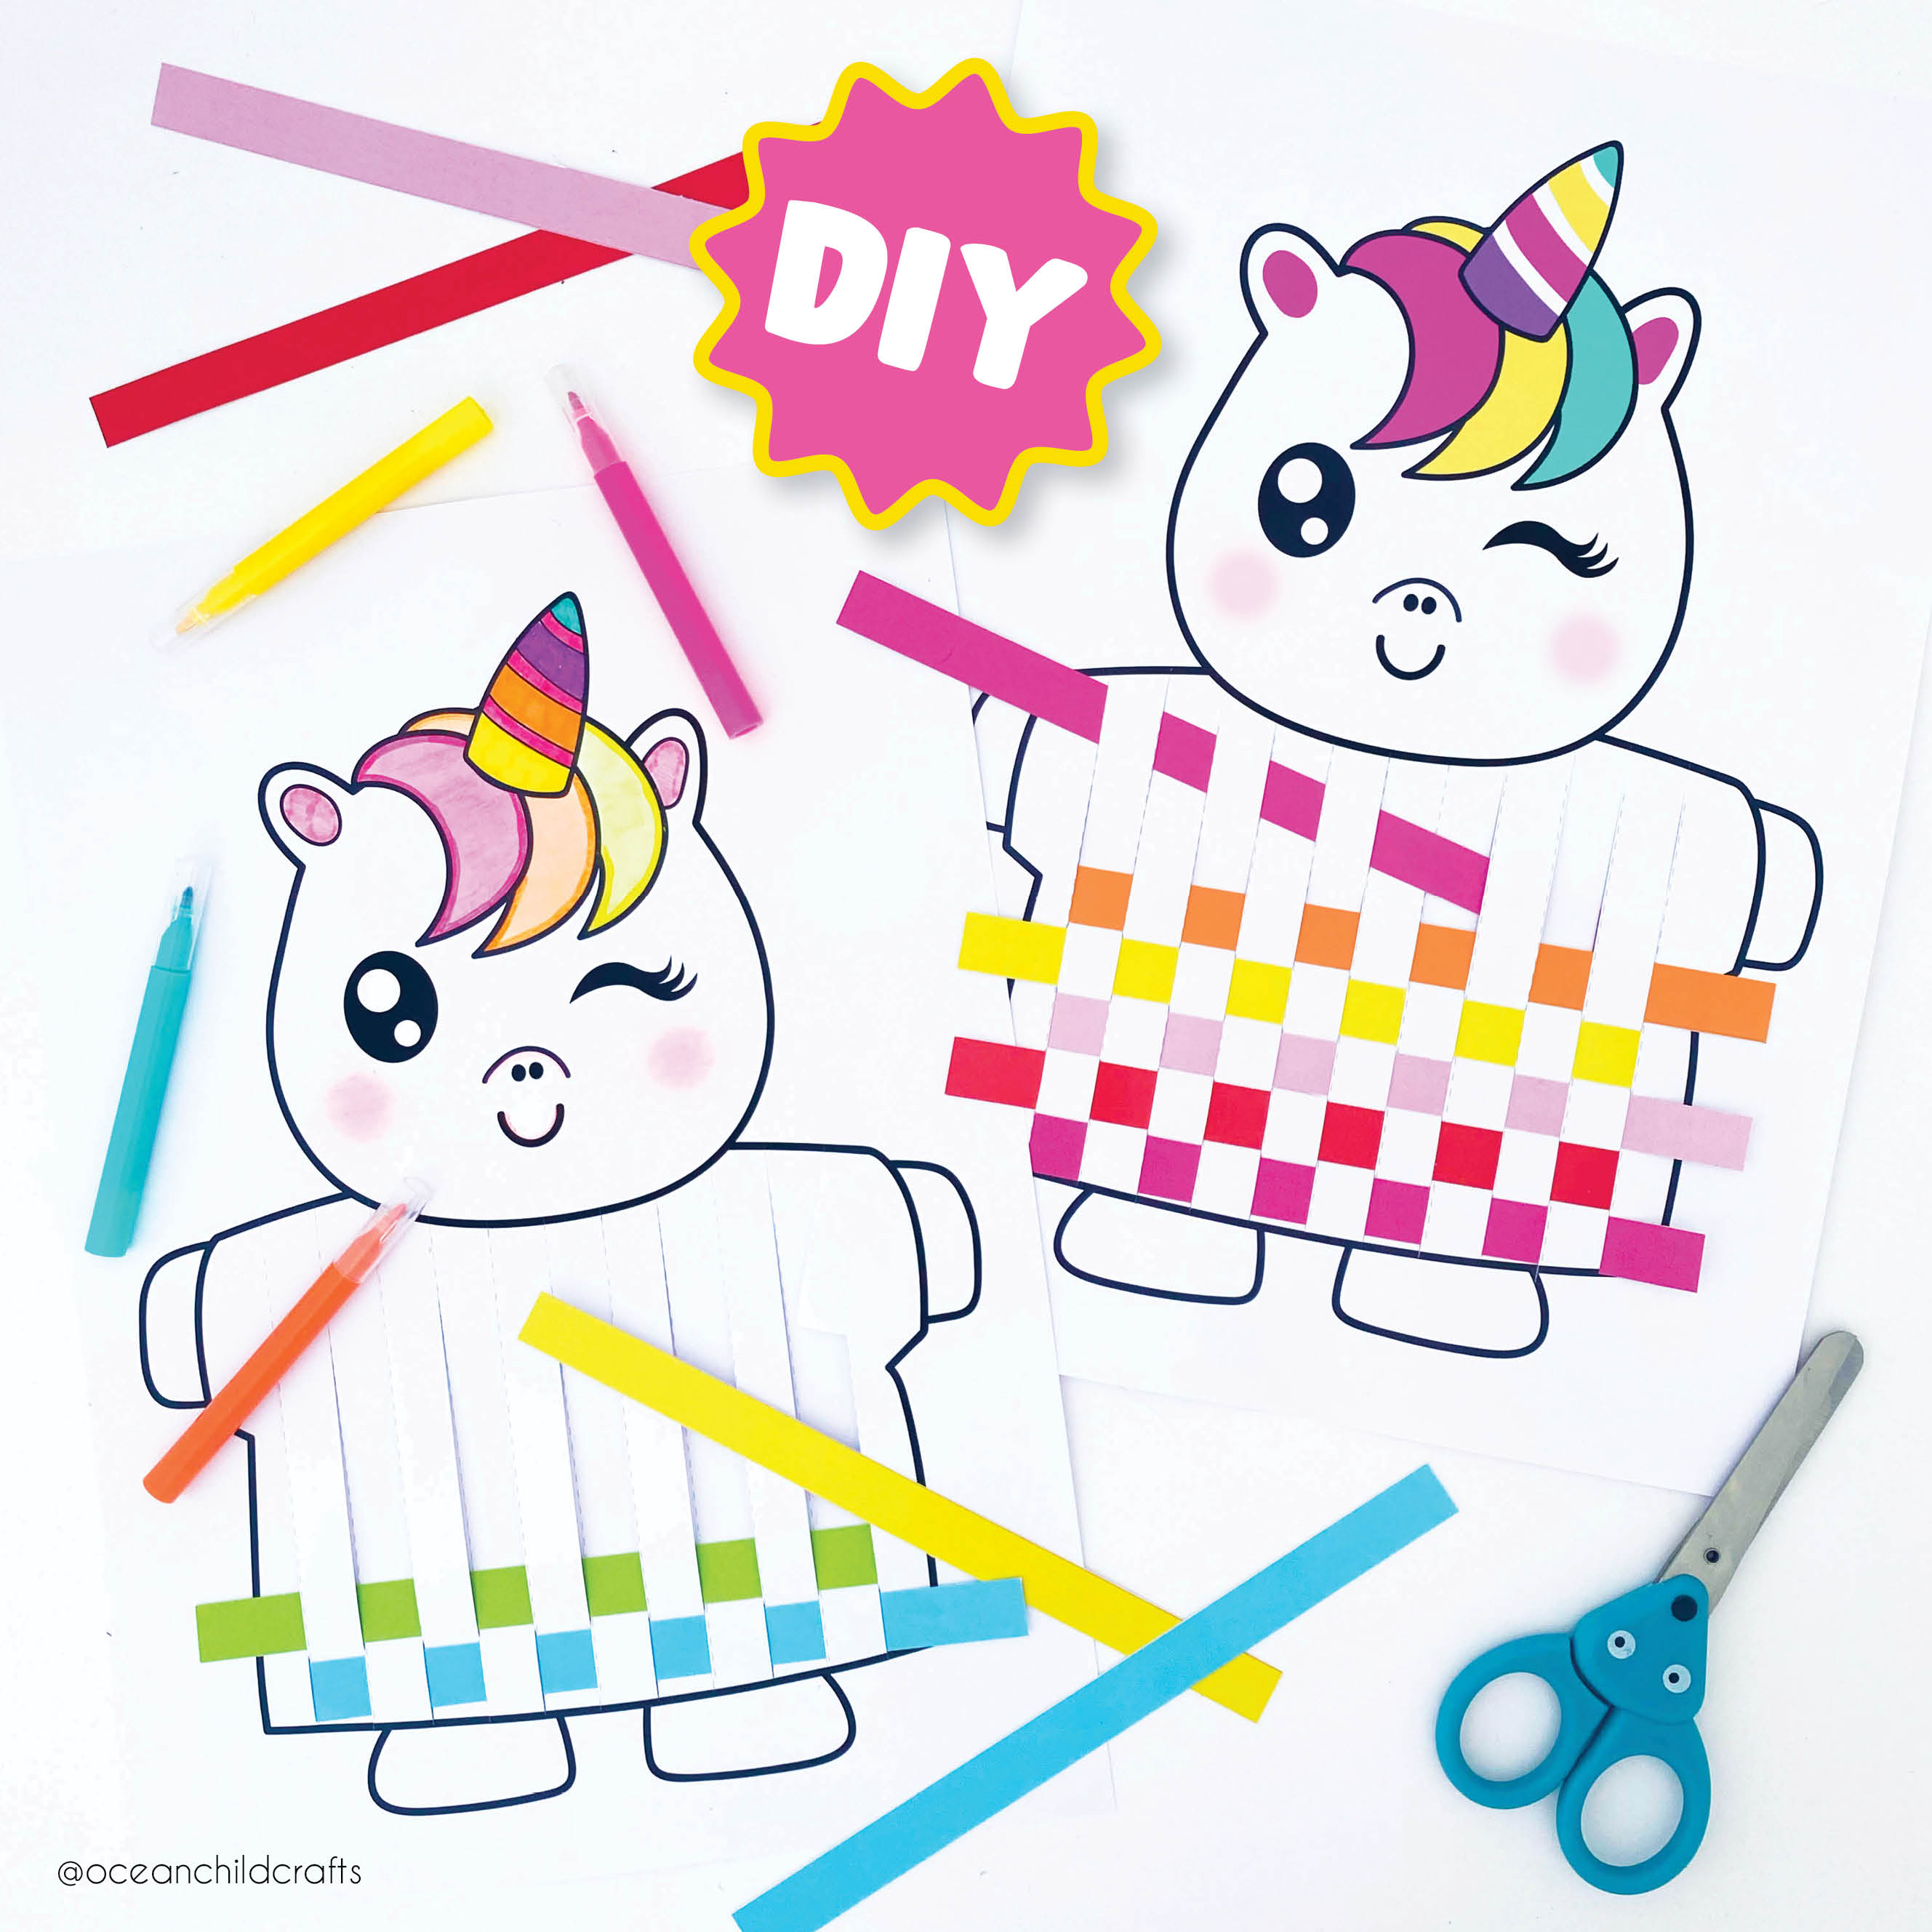 Unicorn craft printable for kids